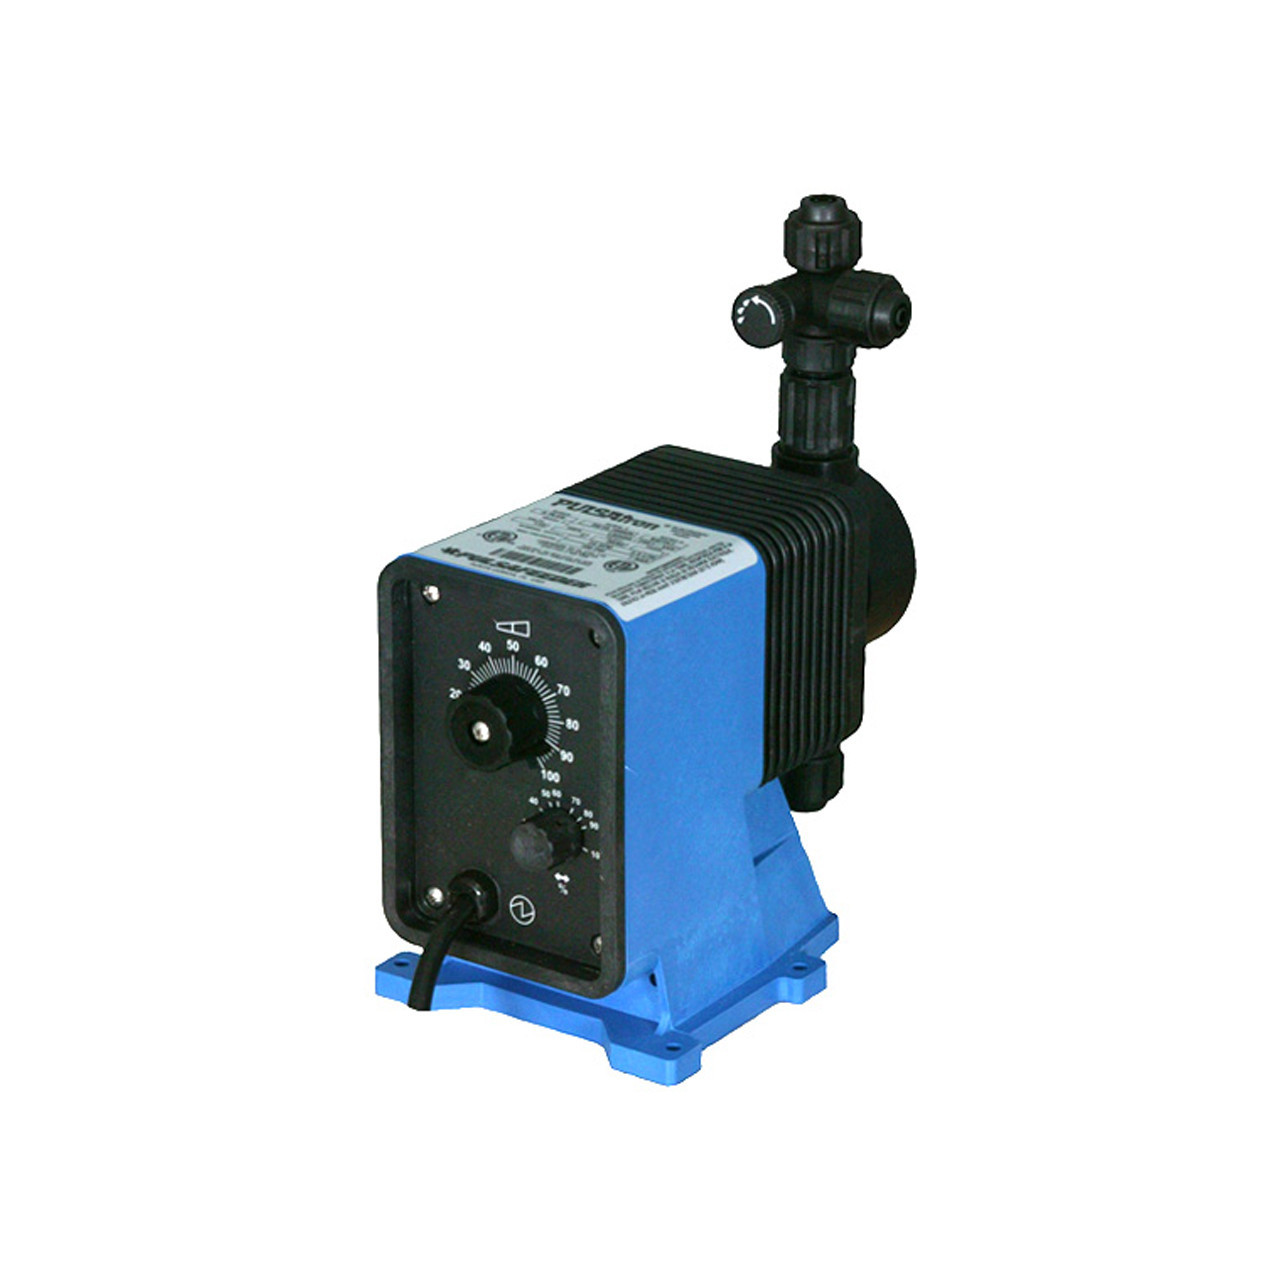 PULSAtron Series A+ Model LB02SB-PTC1-500 Diaphragm Metering Pump